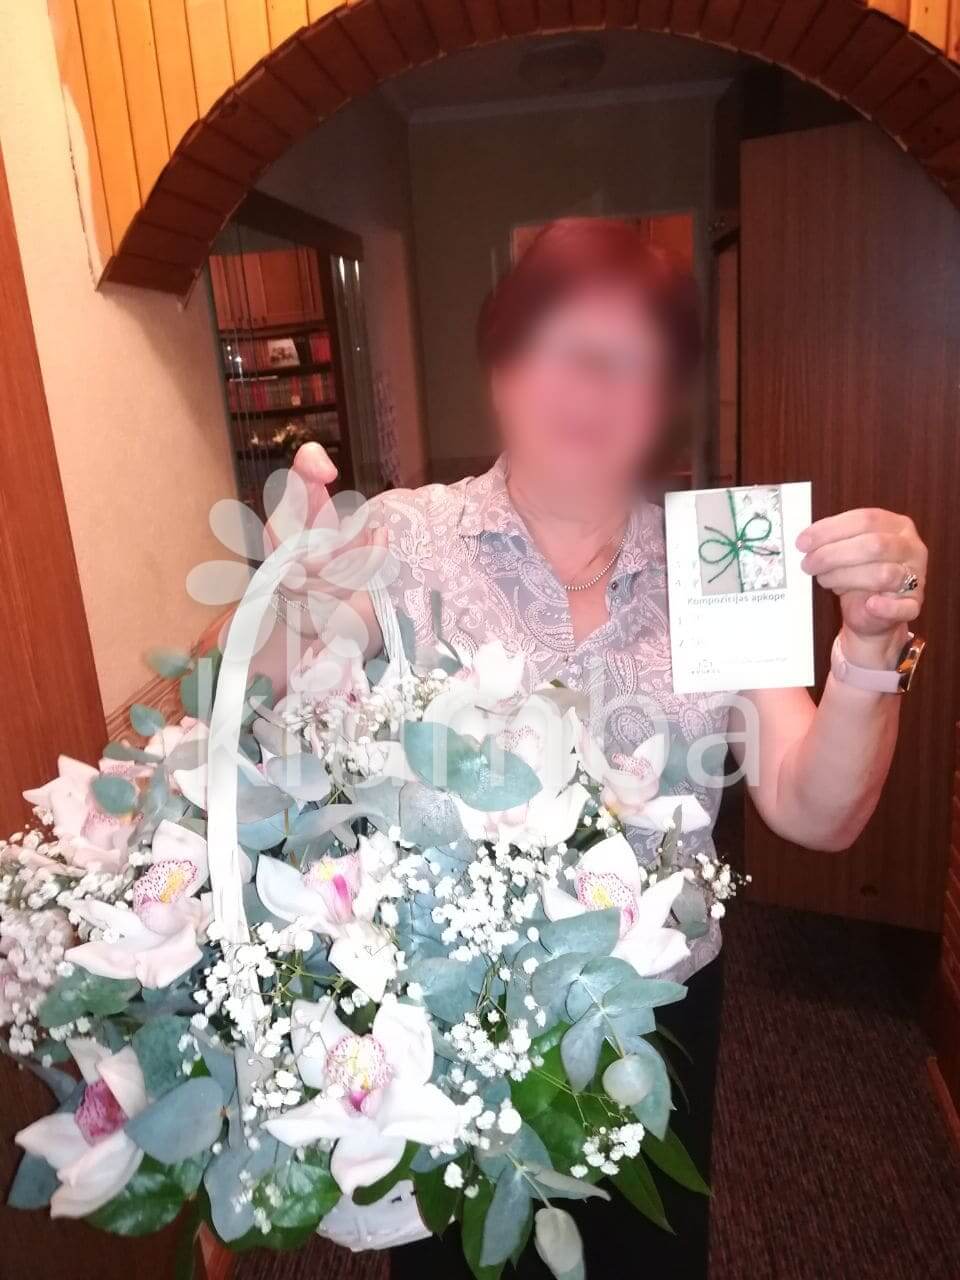 Deliver flowers to Rīga (gum treeorchidsgypsophila)